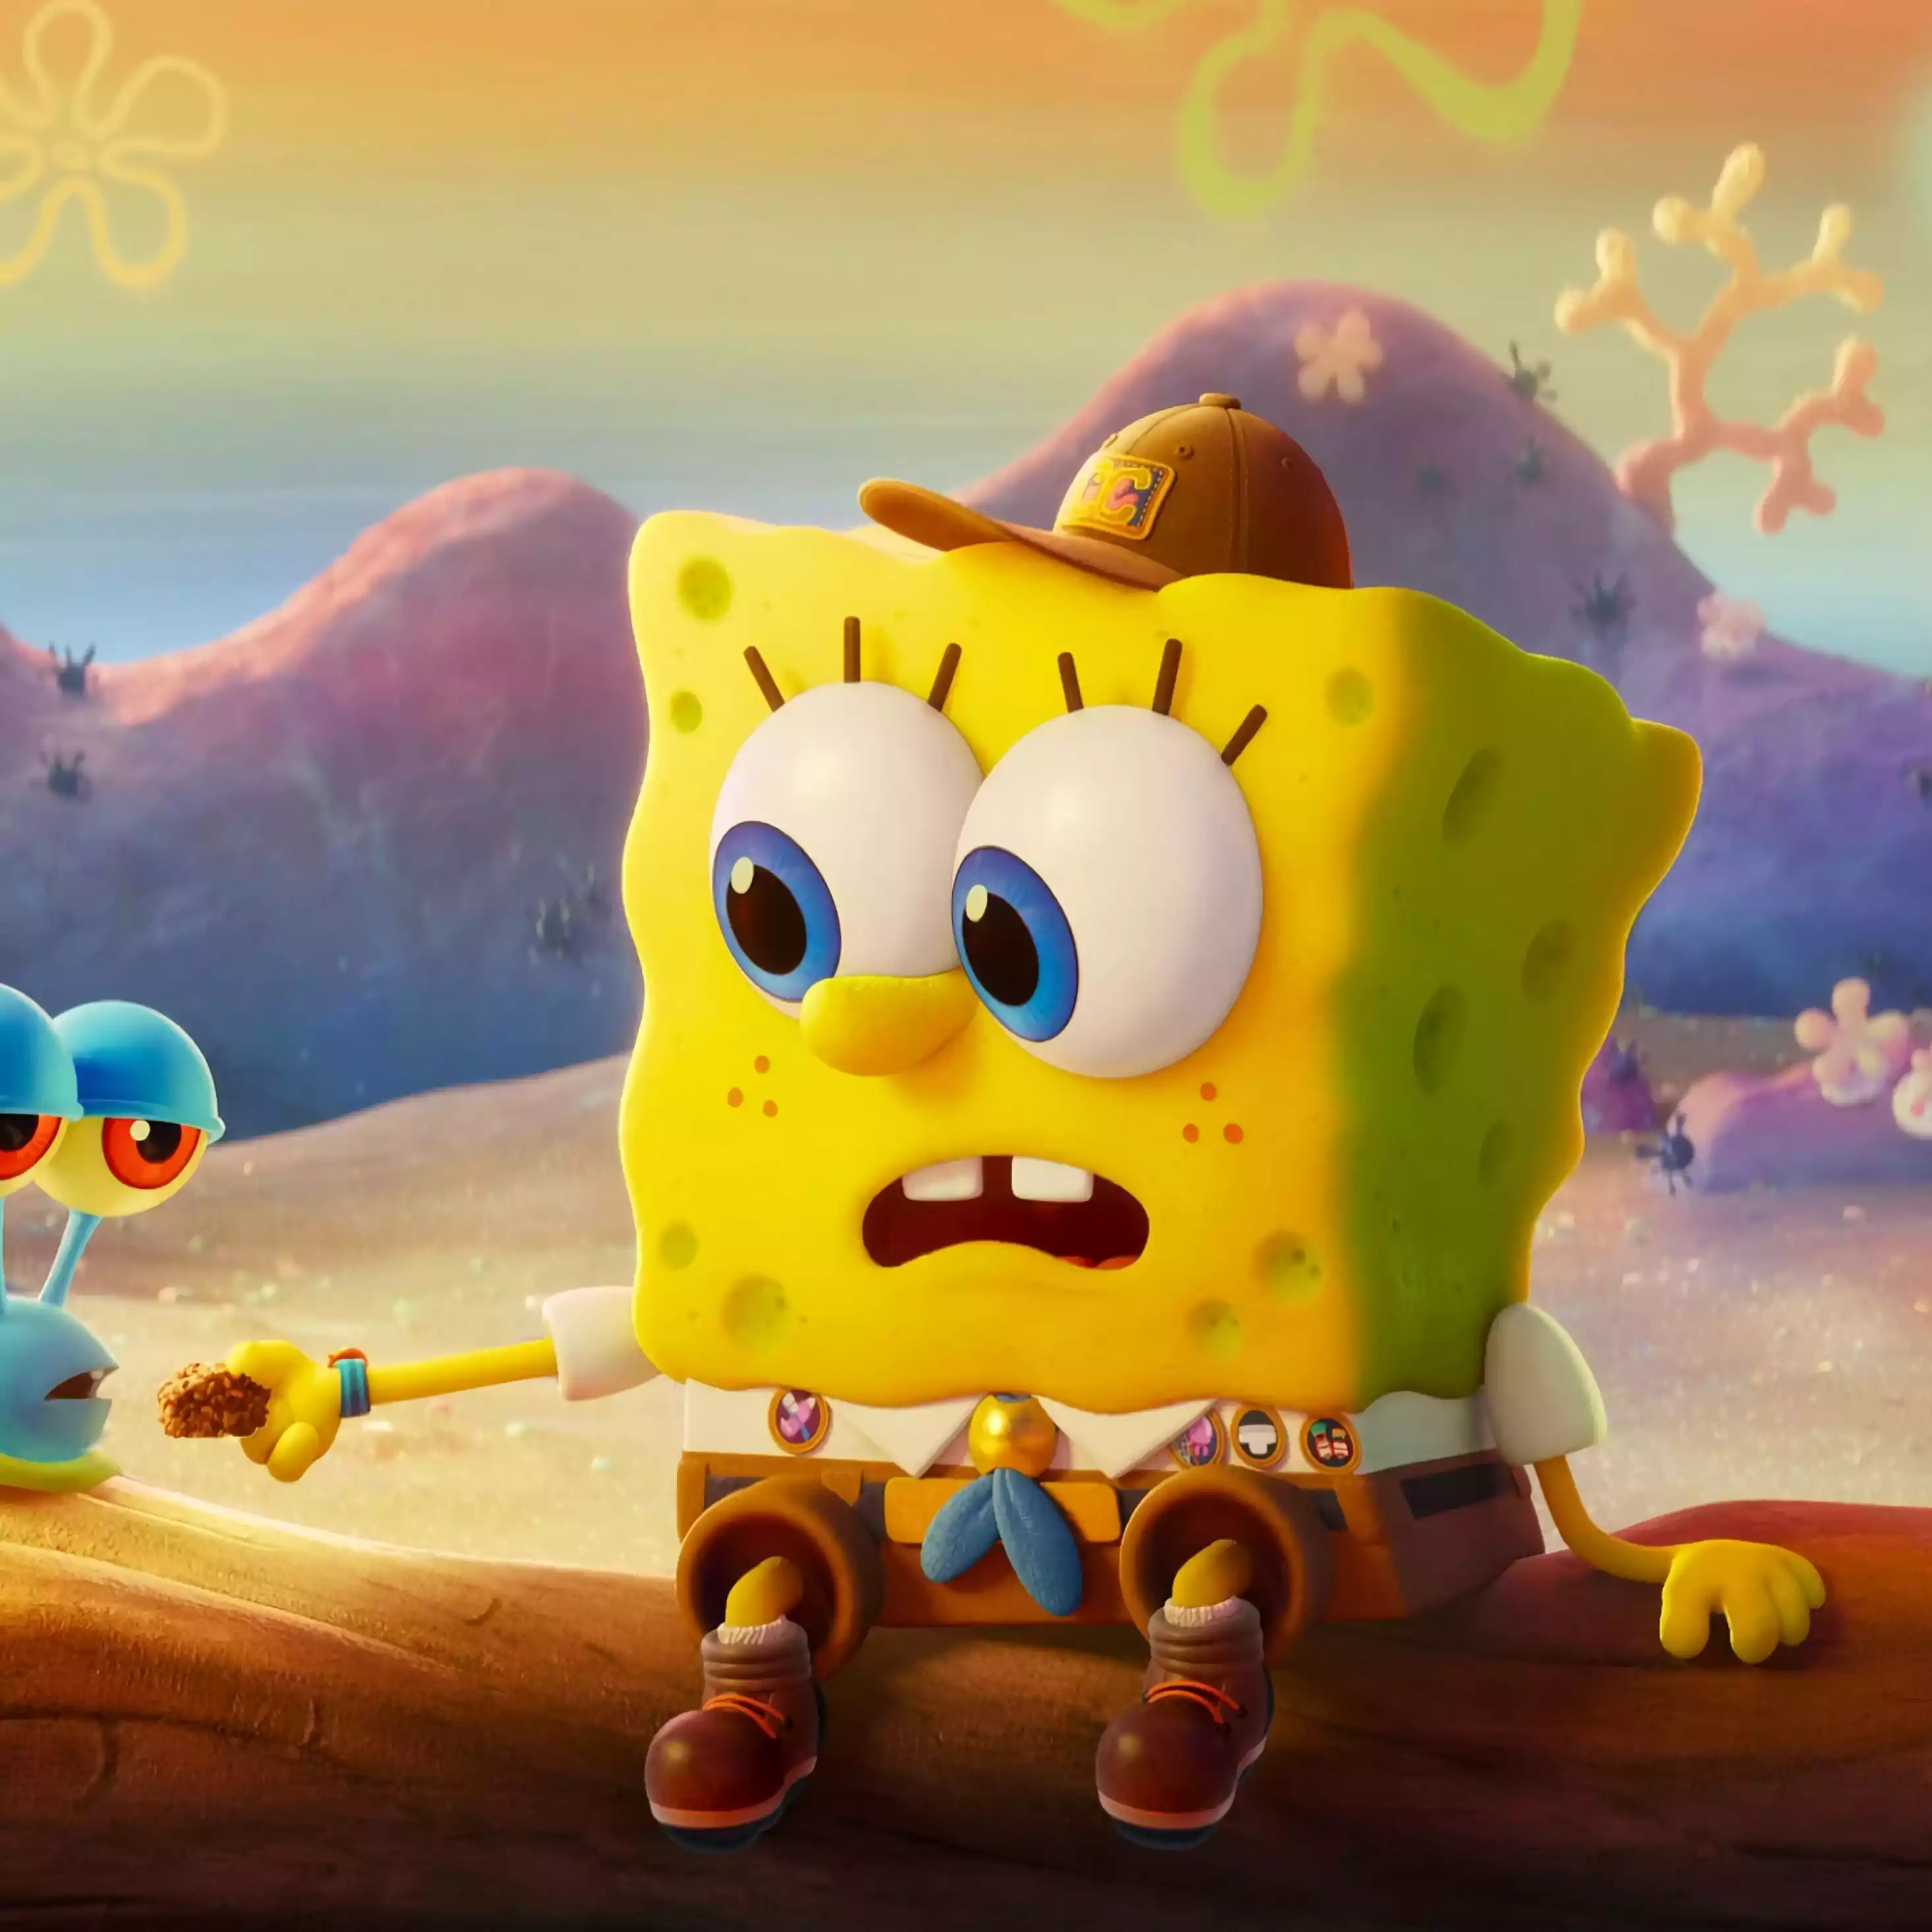 Tải game SpongeBob - Nấu ăn cùng SpongeBob | Hướng dẫn cách chơi